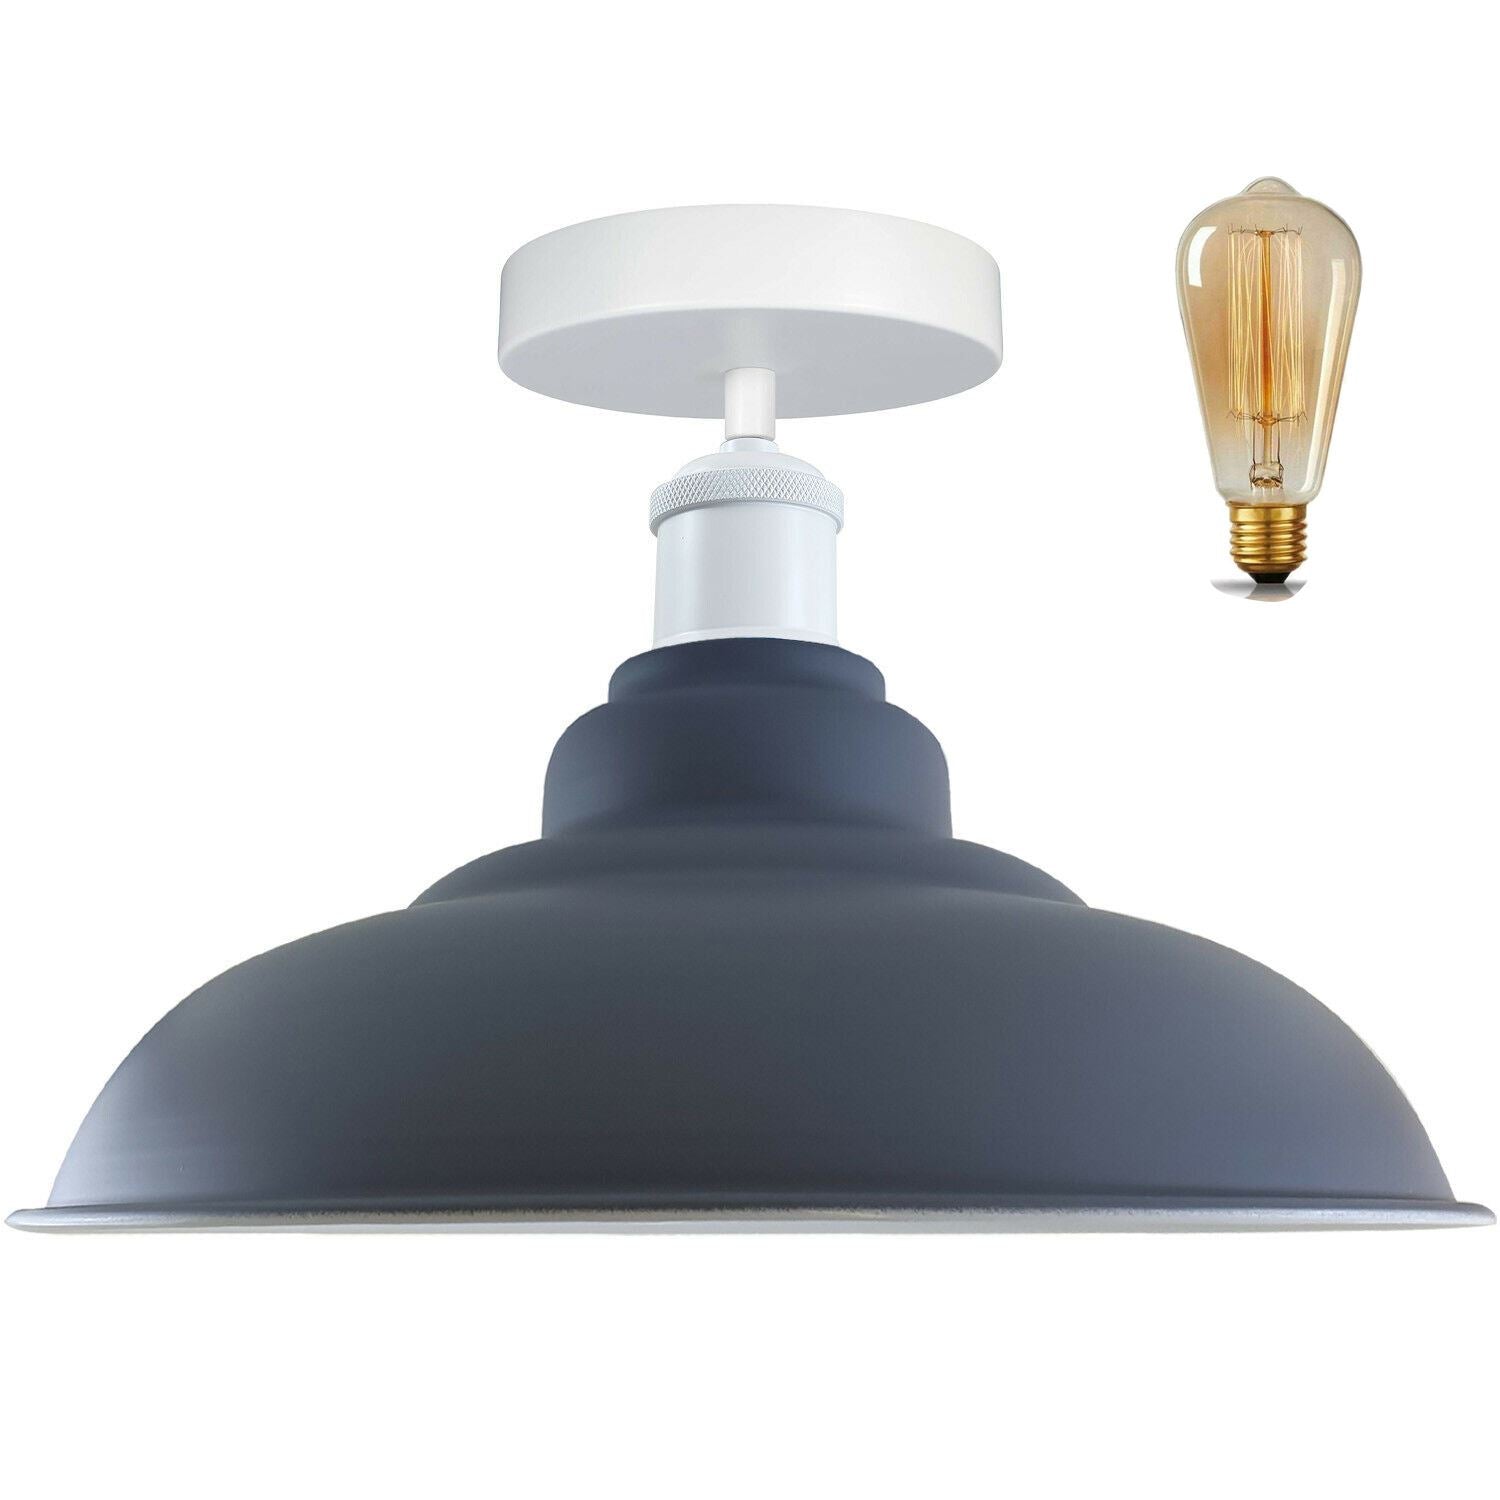 Modern Industrial Style Ceiling Light Fittings Metal Flush Mount Bowl Shape Shade Indoor Lighting, E27 Base~1192 - LEDSone UK Ltd